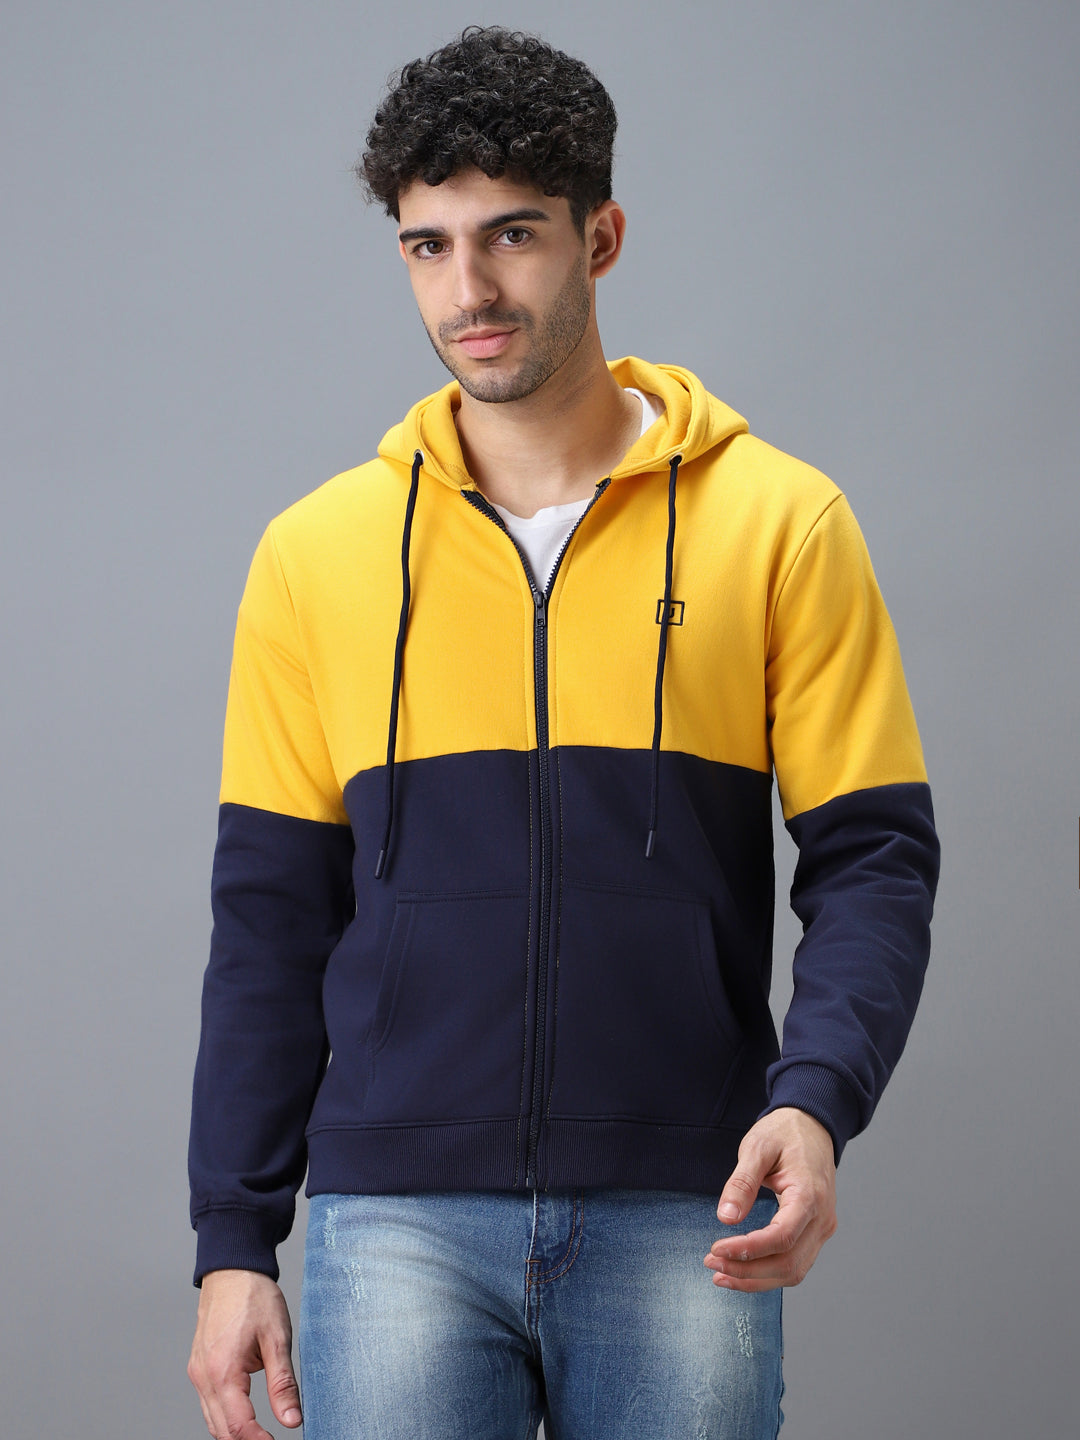 Men's Yellow, Navy Color Block Cotton Zippered Hooded Sweatshirt